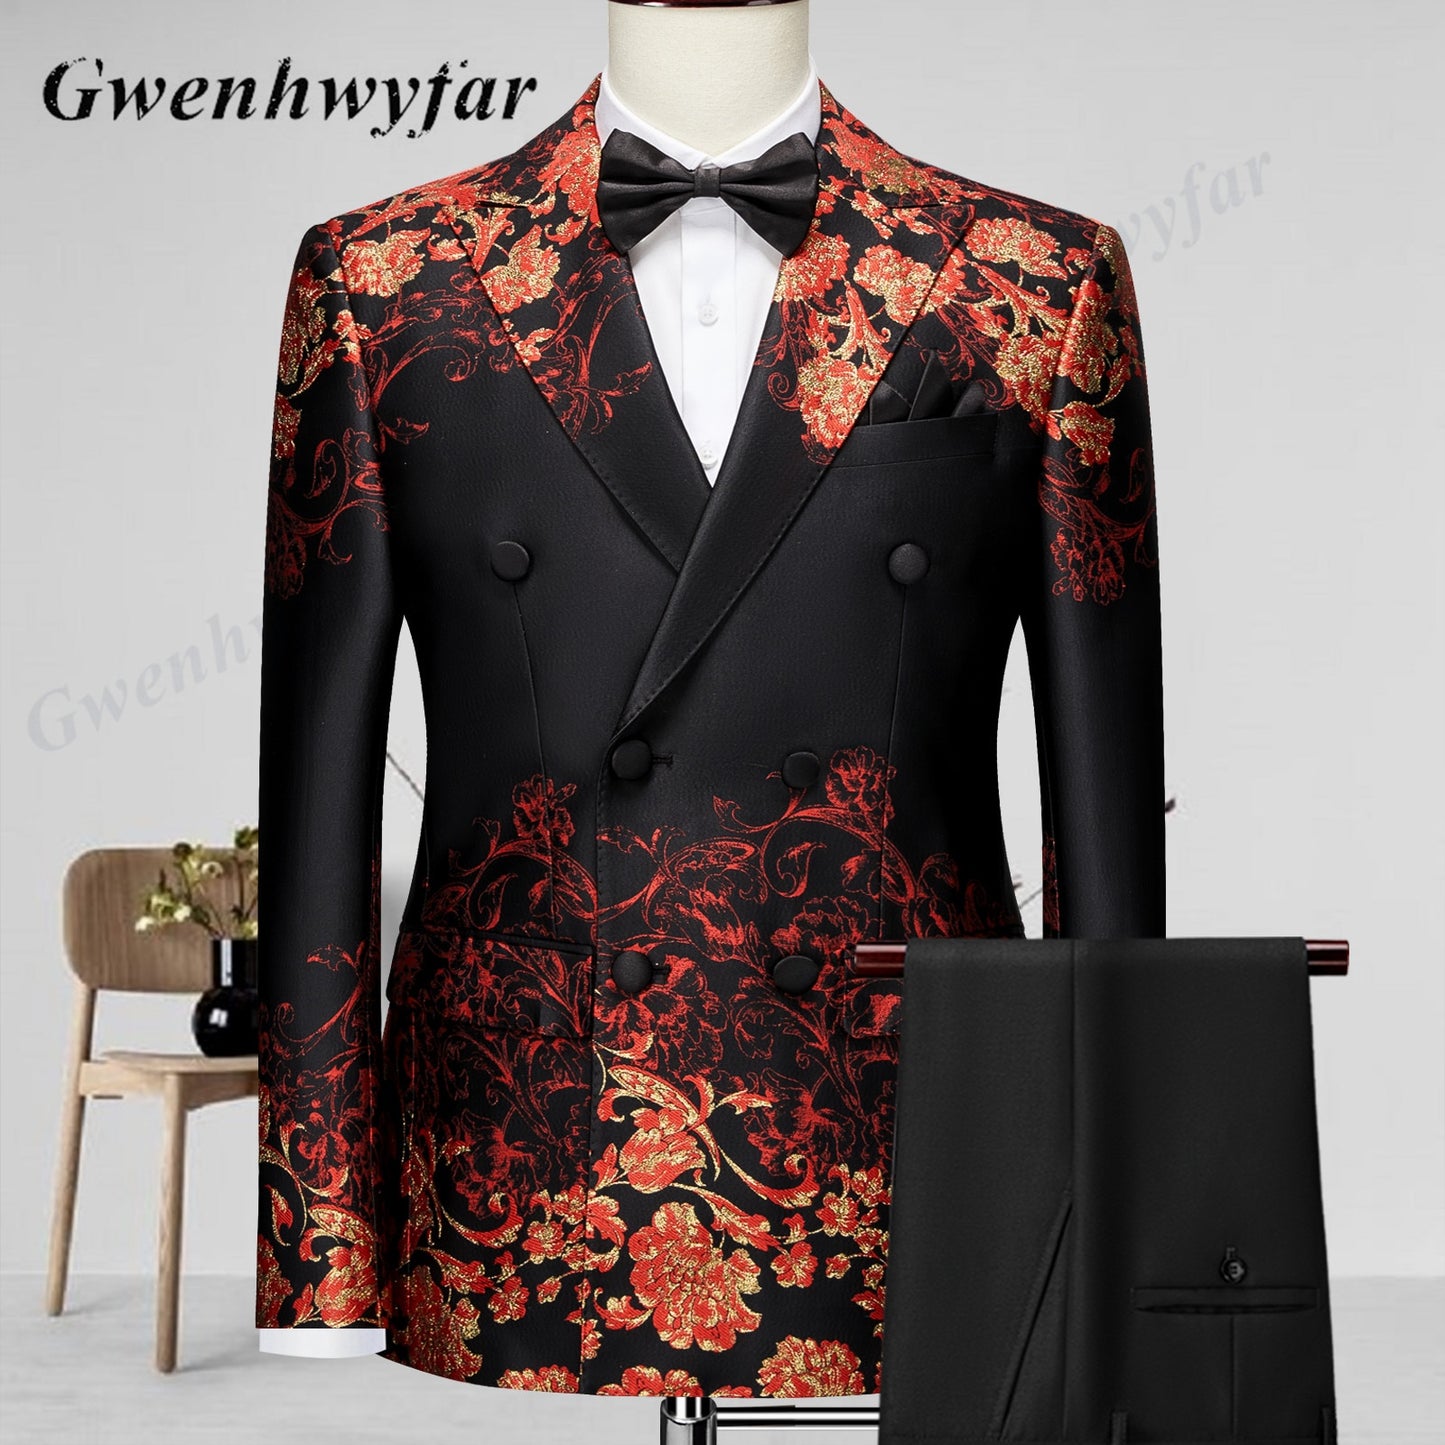 Gwenhwyfar Luxus-Orchideen-Muster Hochzeitsanzüge Smoking Weste